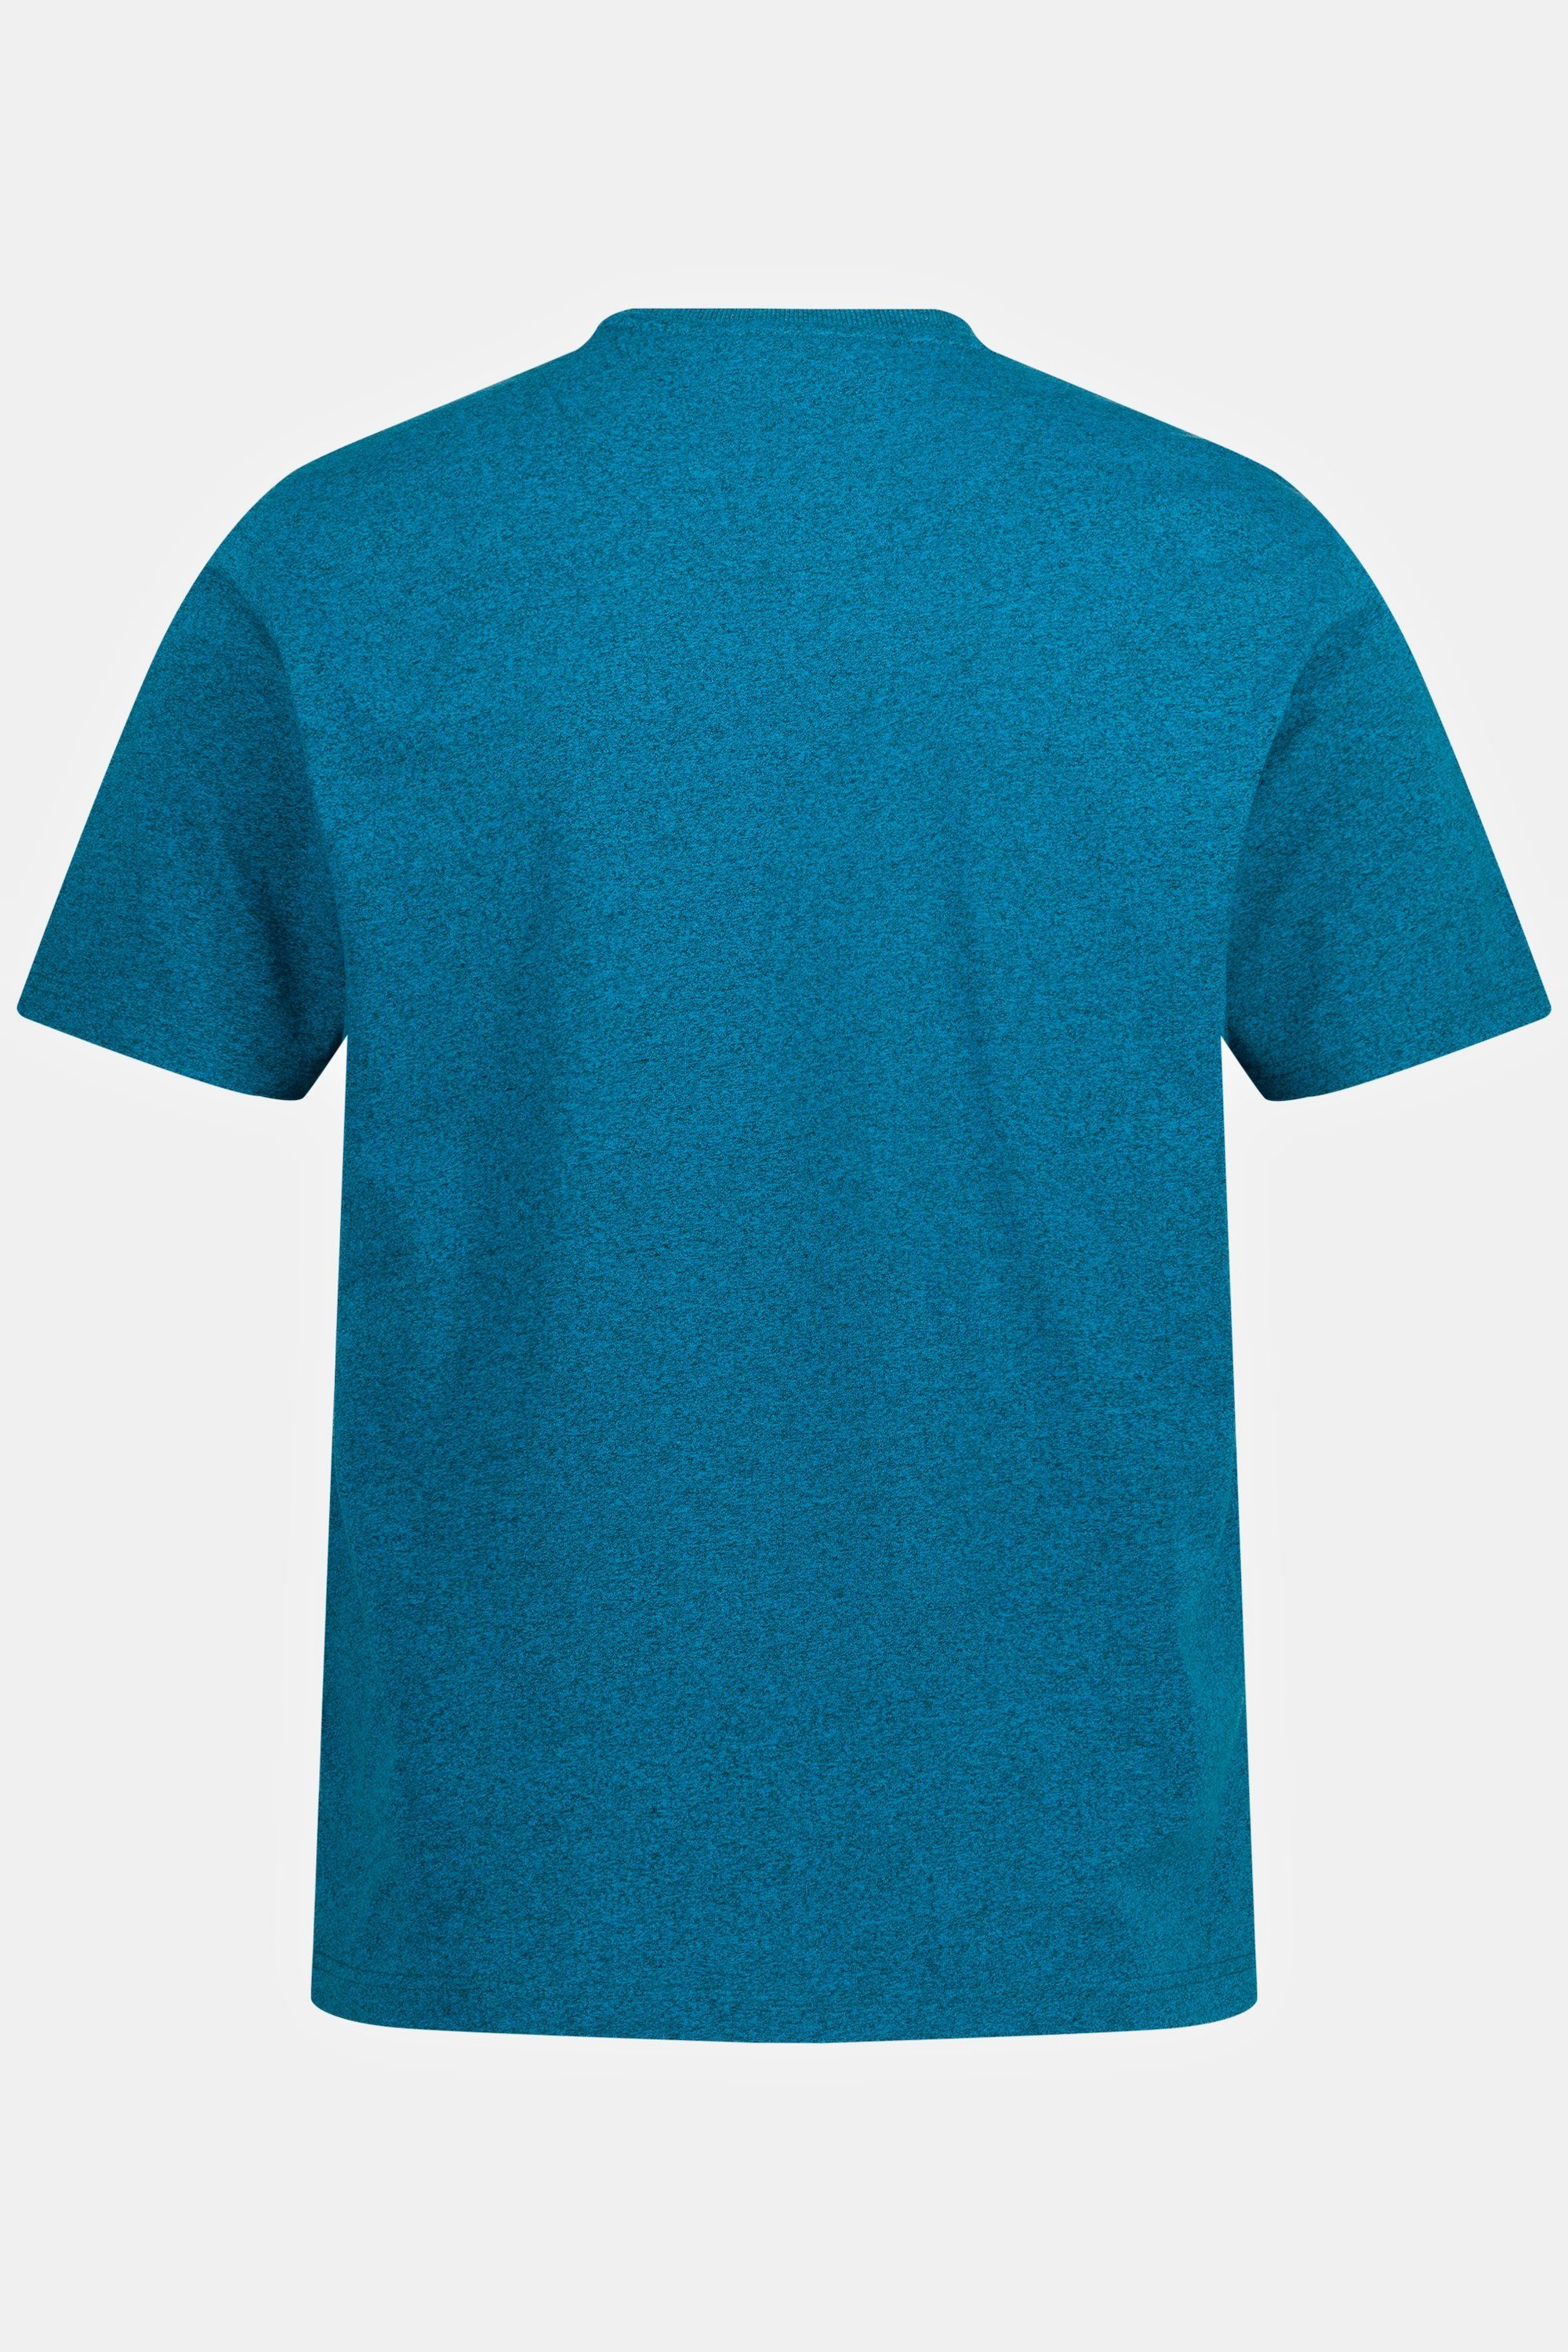 Print MYRO T-Shirt JP1880 T-Shirt Halbarm Melange-Jersey